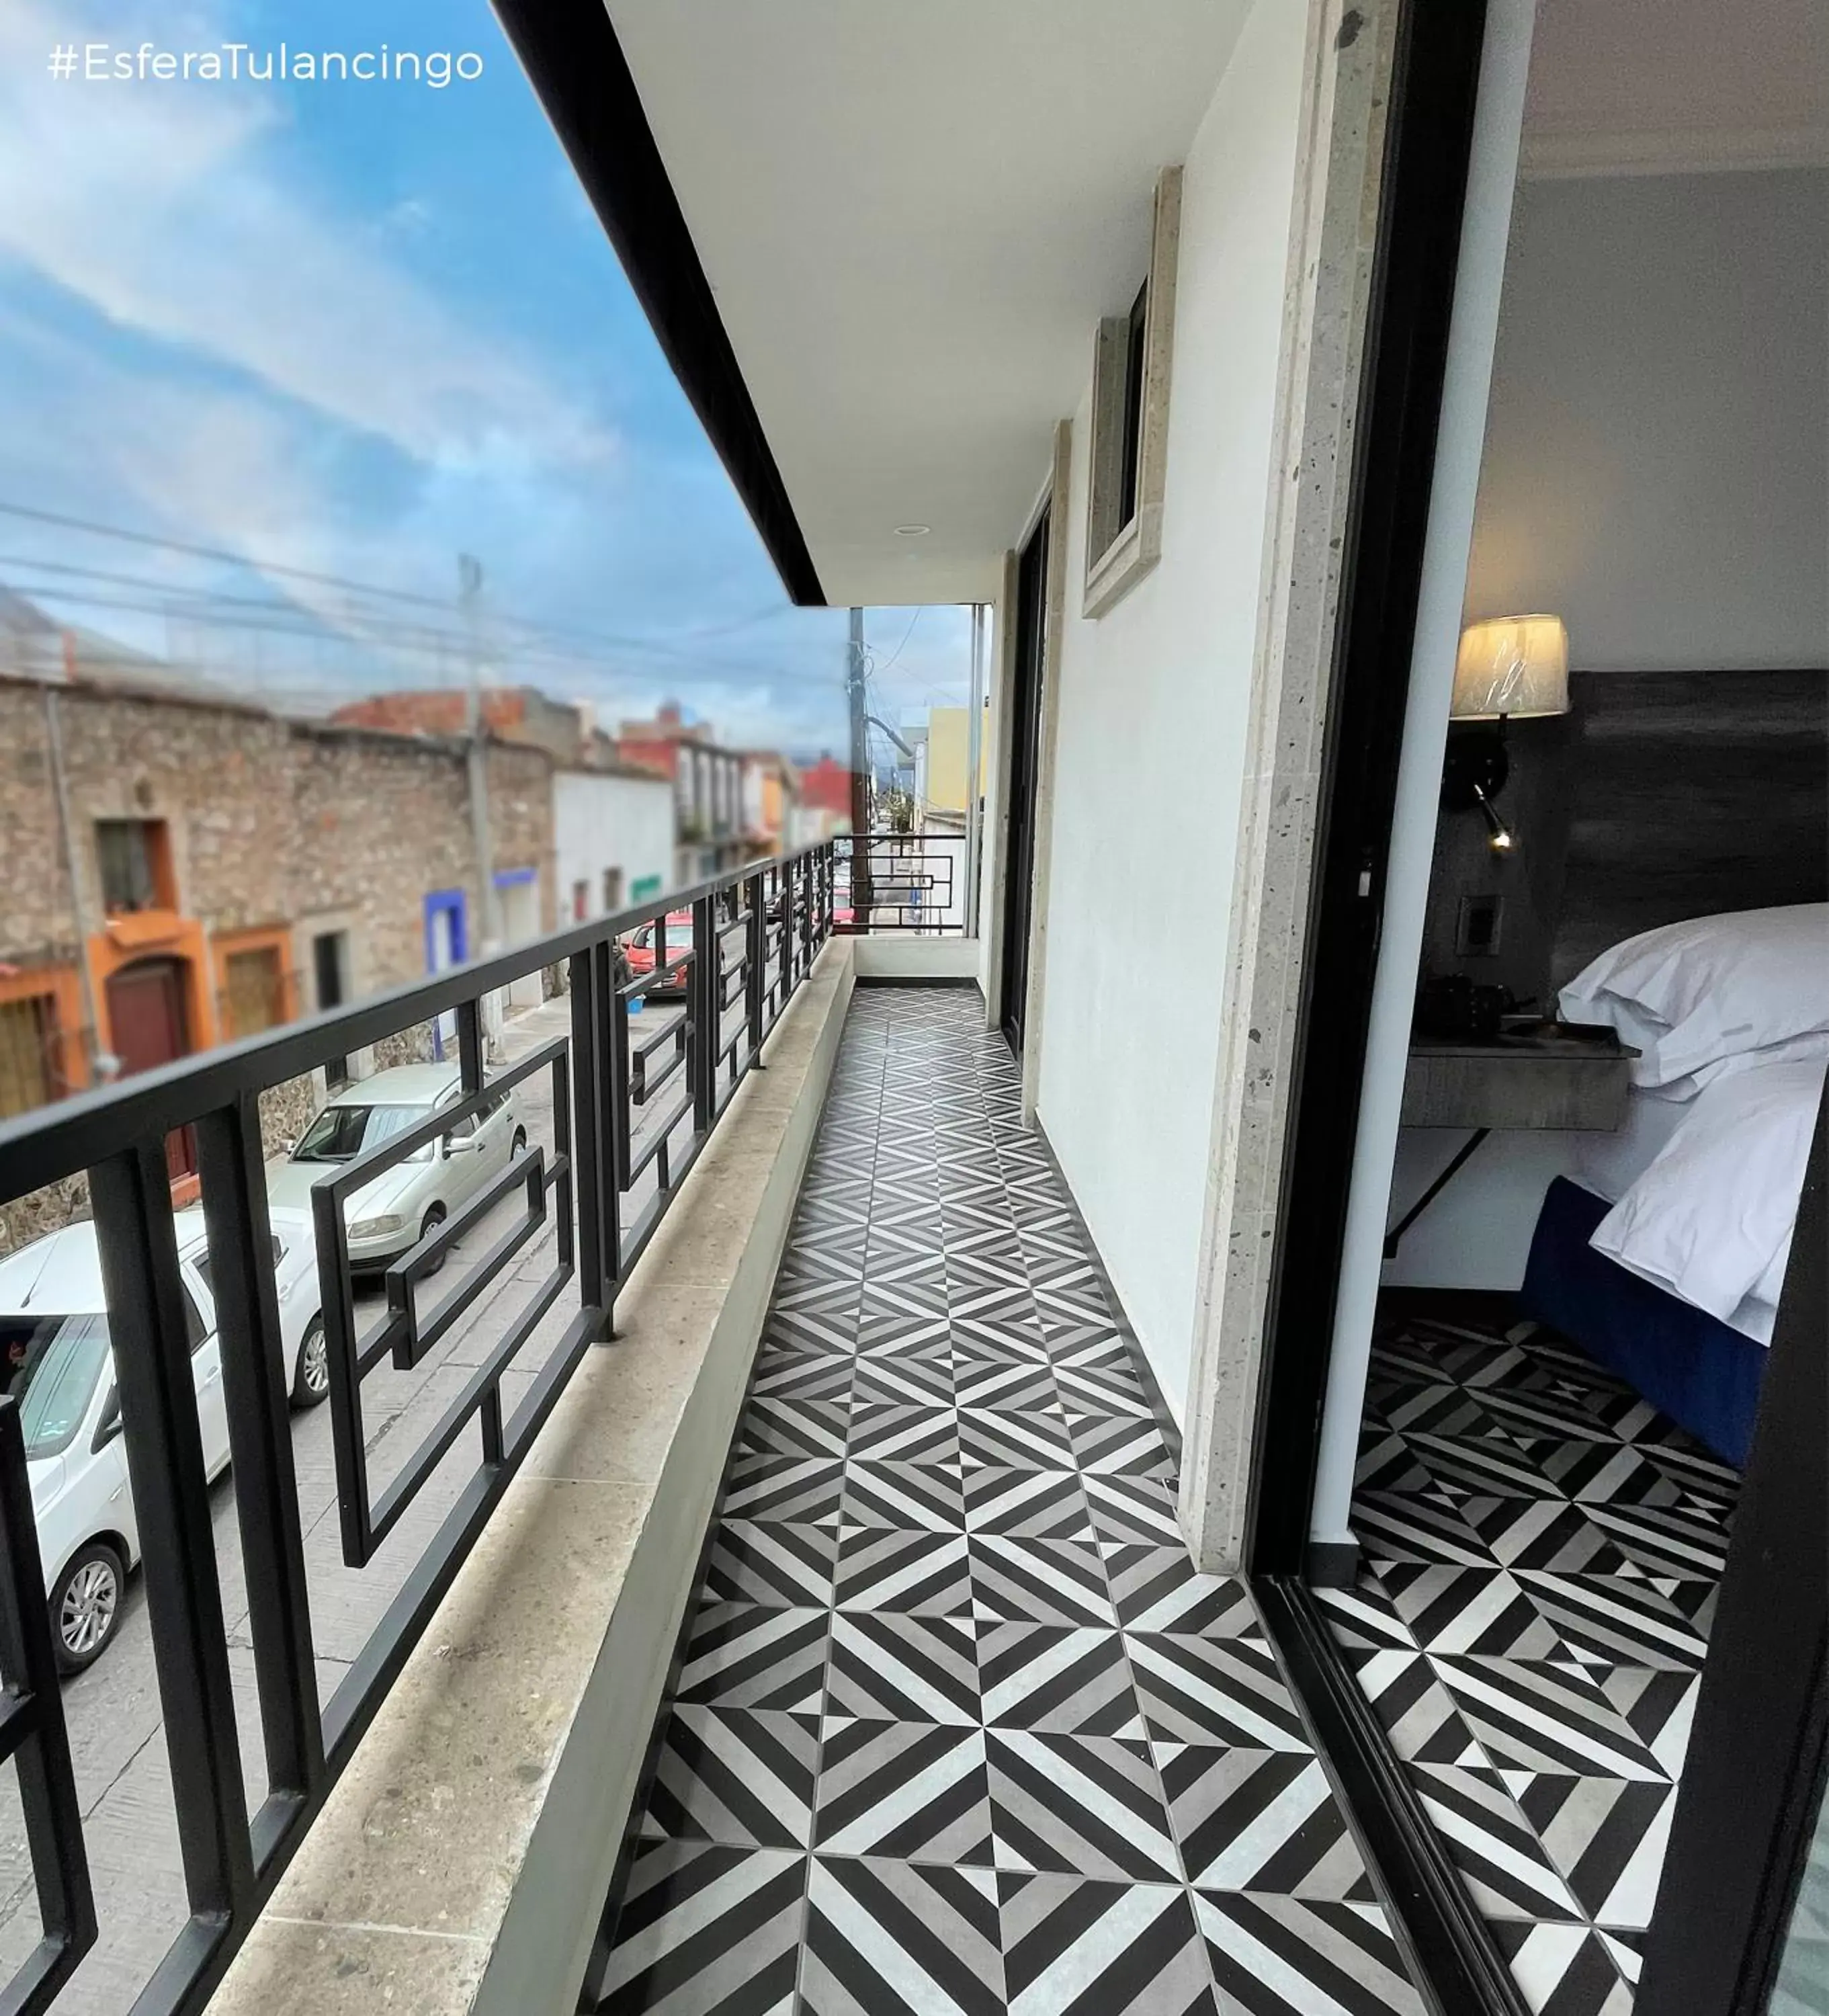 Balcony/Terrace in Hotel Esfera Tulancingo